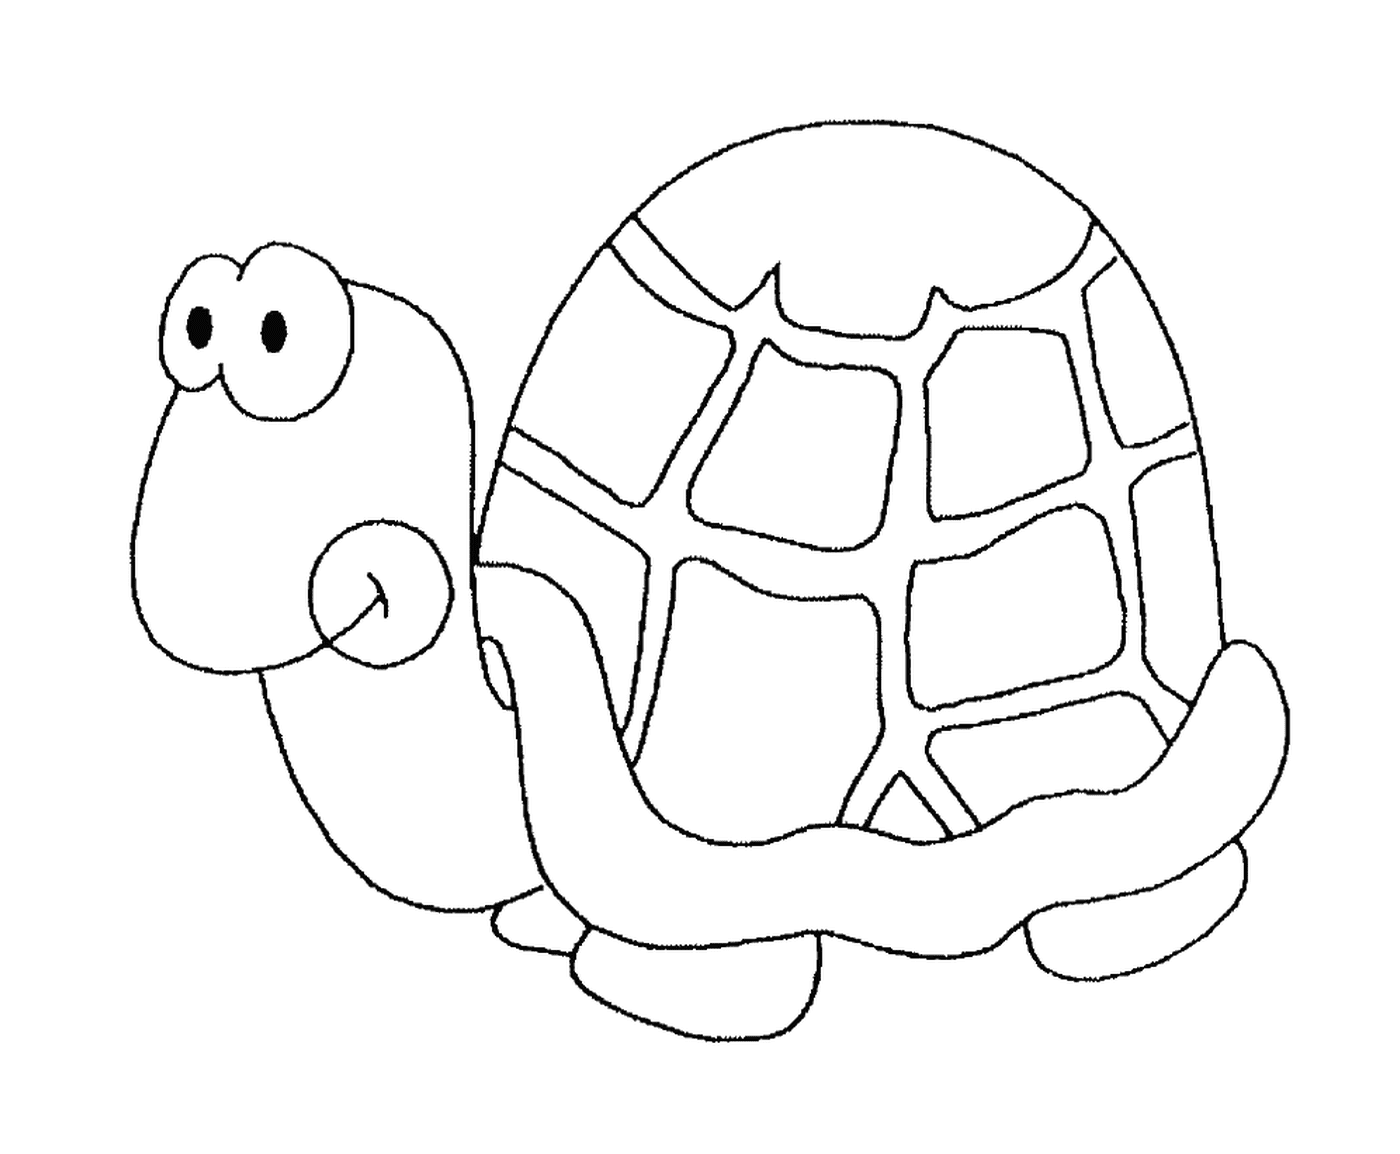  Eine Schildkröte mit einer runden Schale 